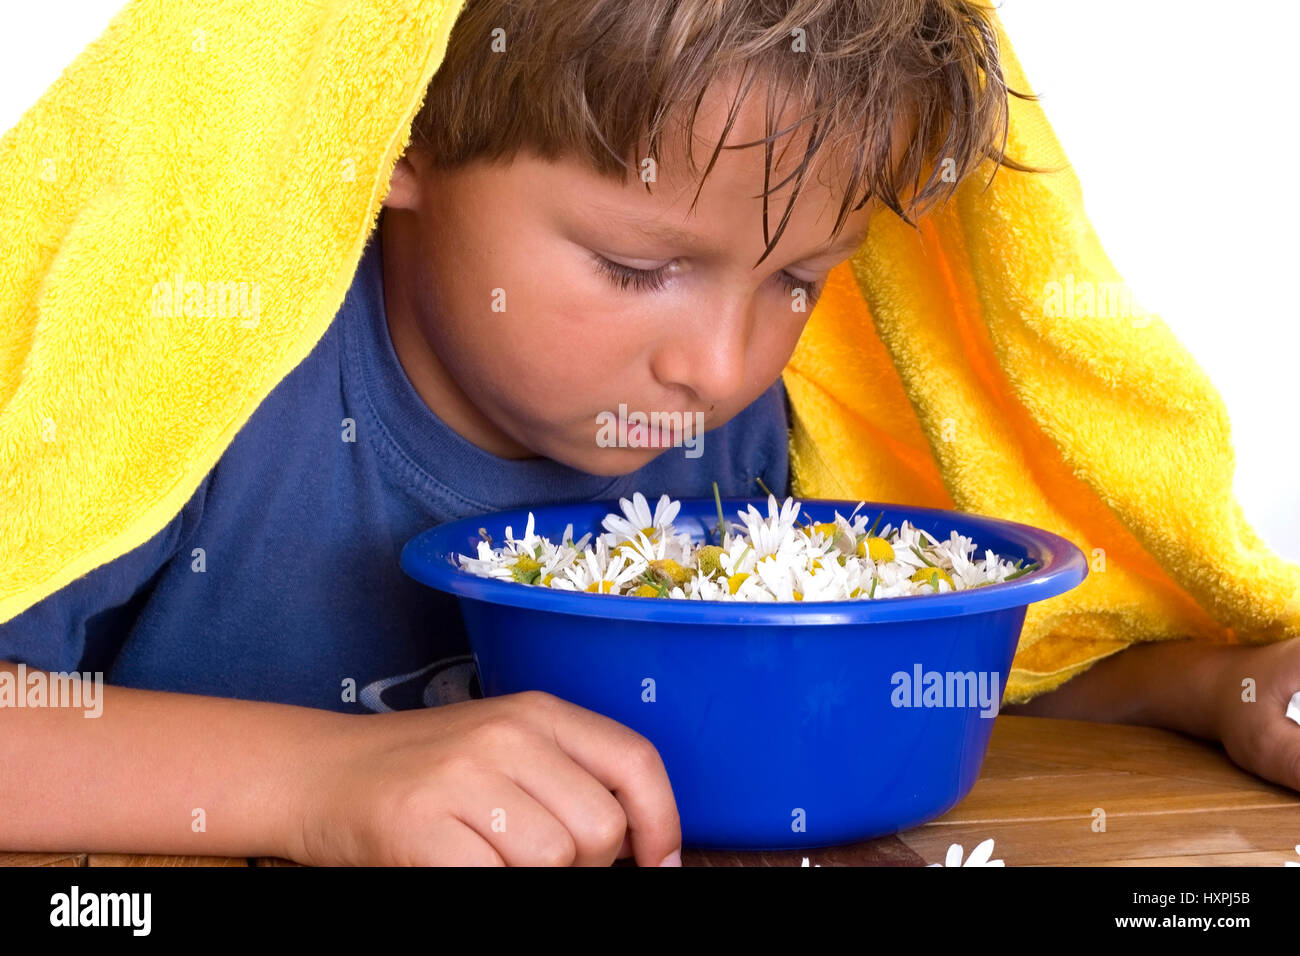 seven-year-old boy cures cold with camomile steam (mr), siebenjähriger Junge kuriert Erkältung mit Kamillendampf aus (mr) Stock Photo